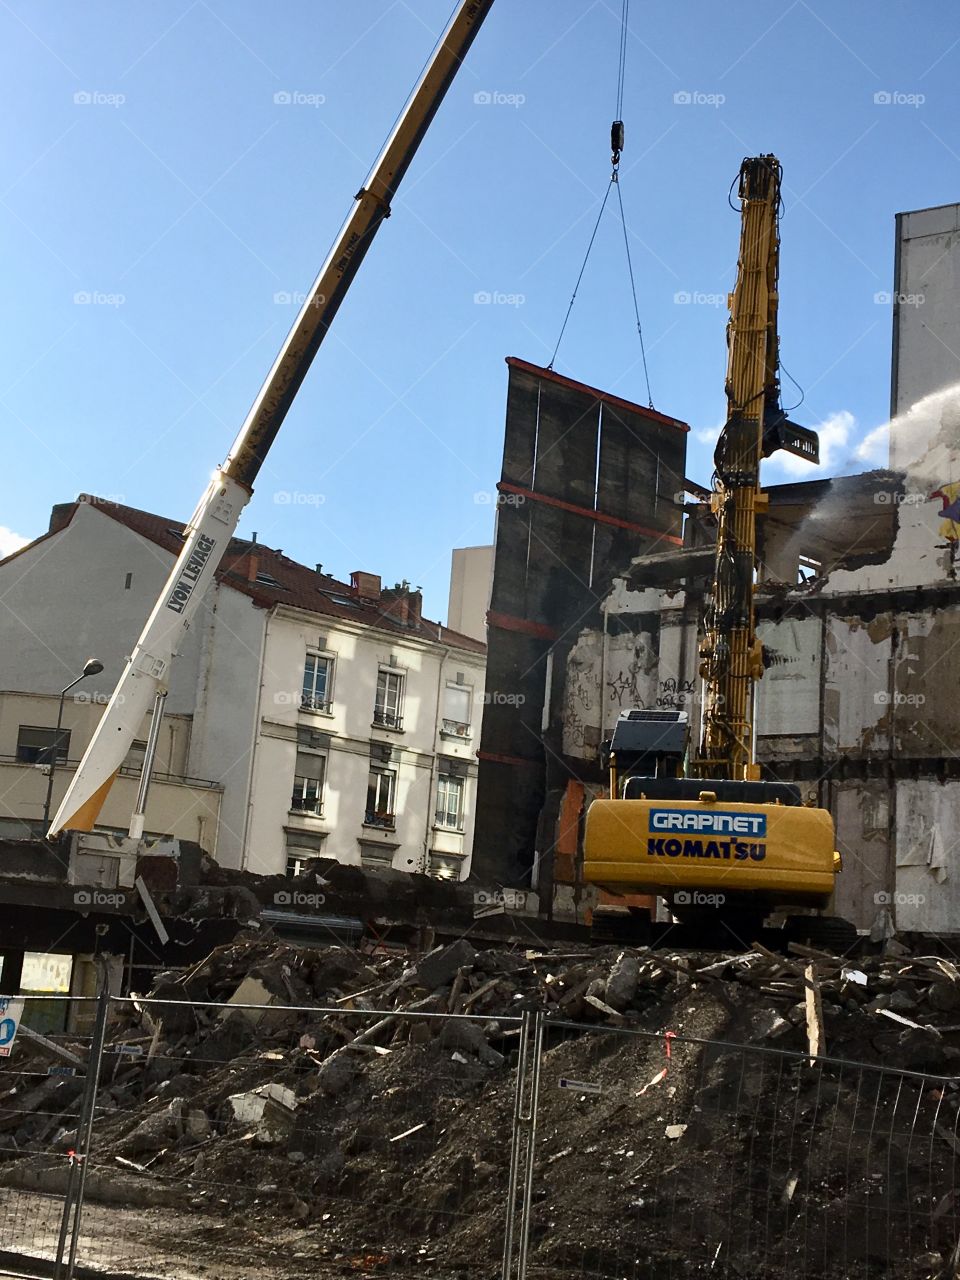 Step by step demolition of this building, Gratte-Ciel, Villeurbanne, France 